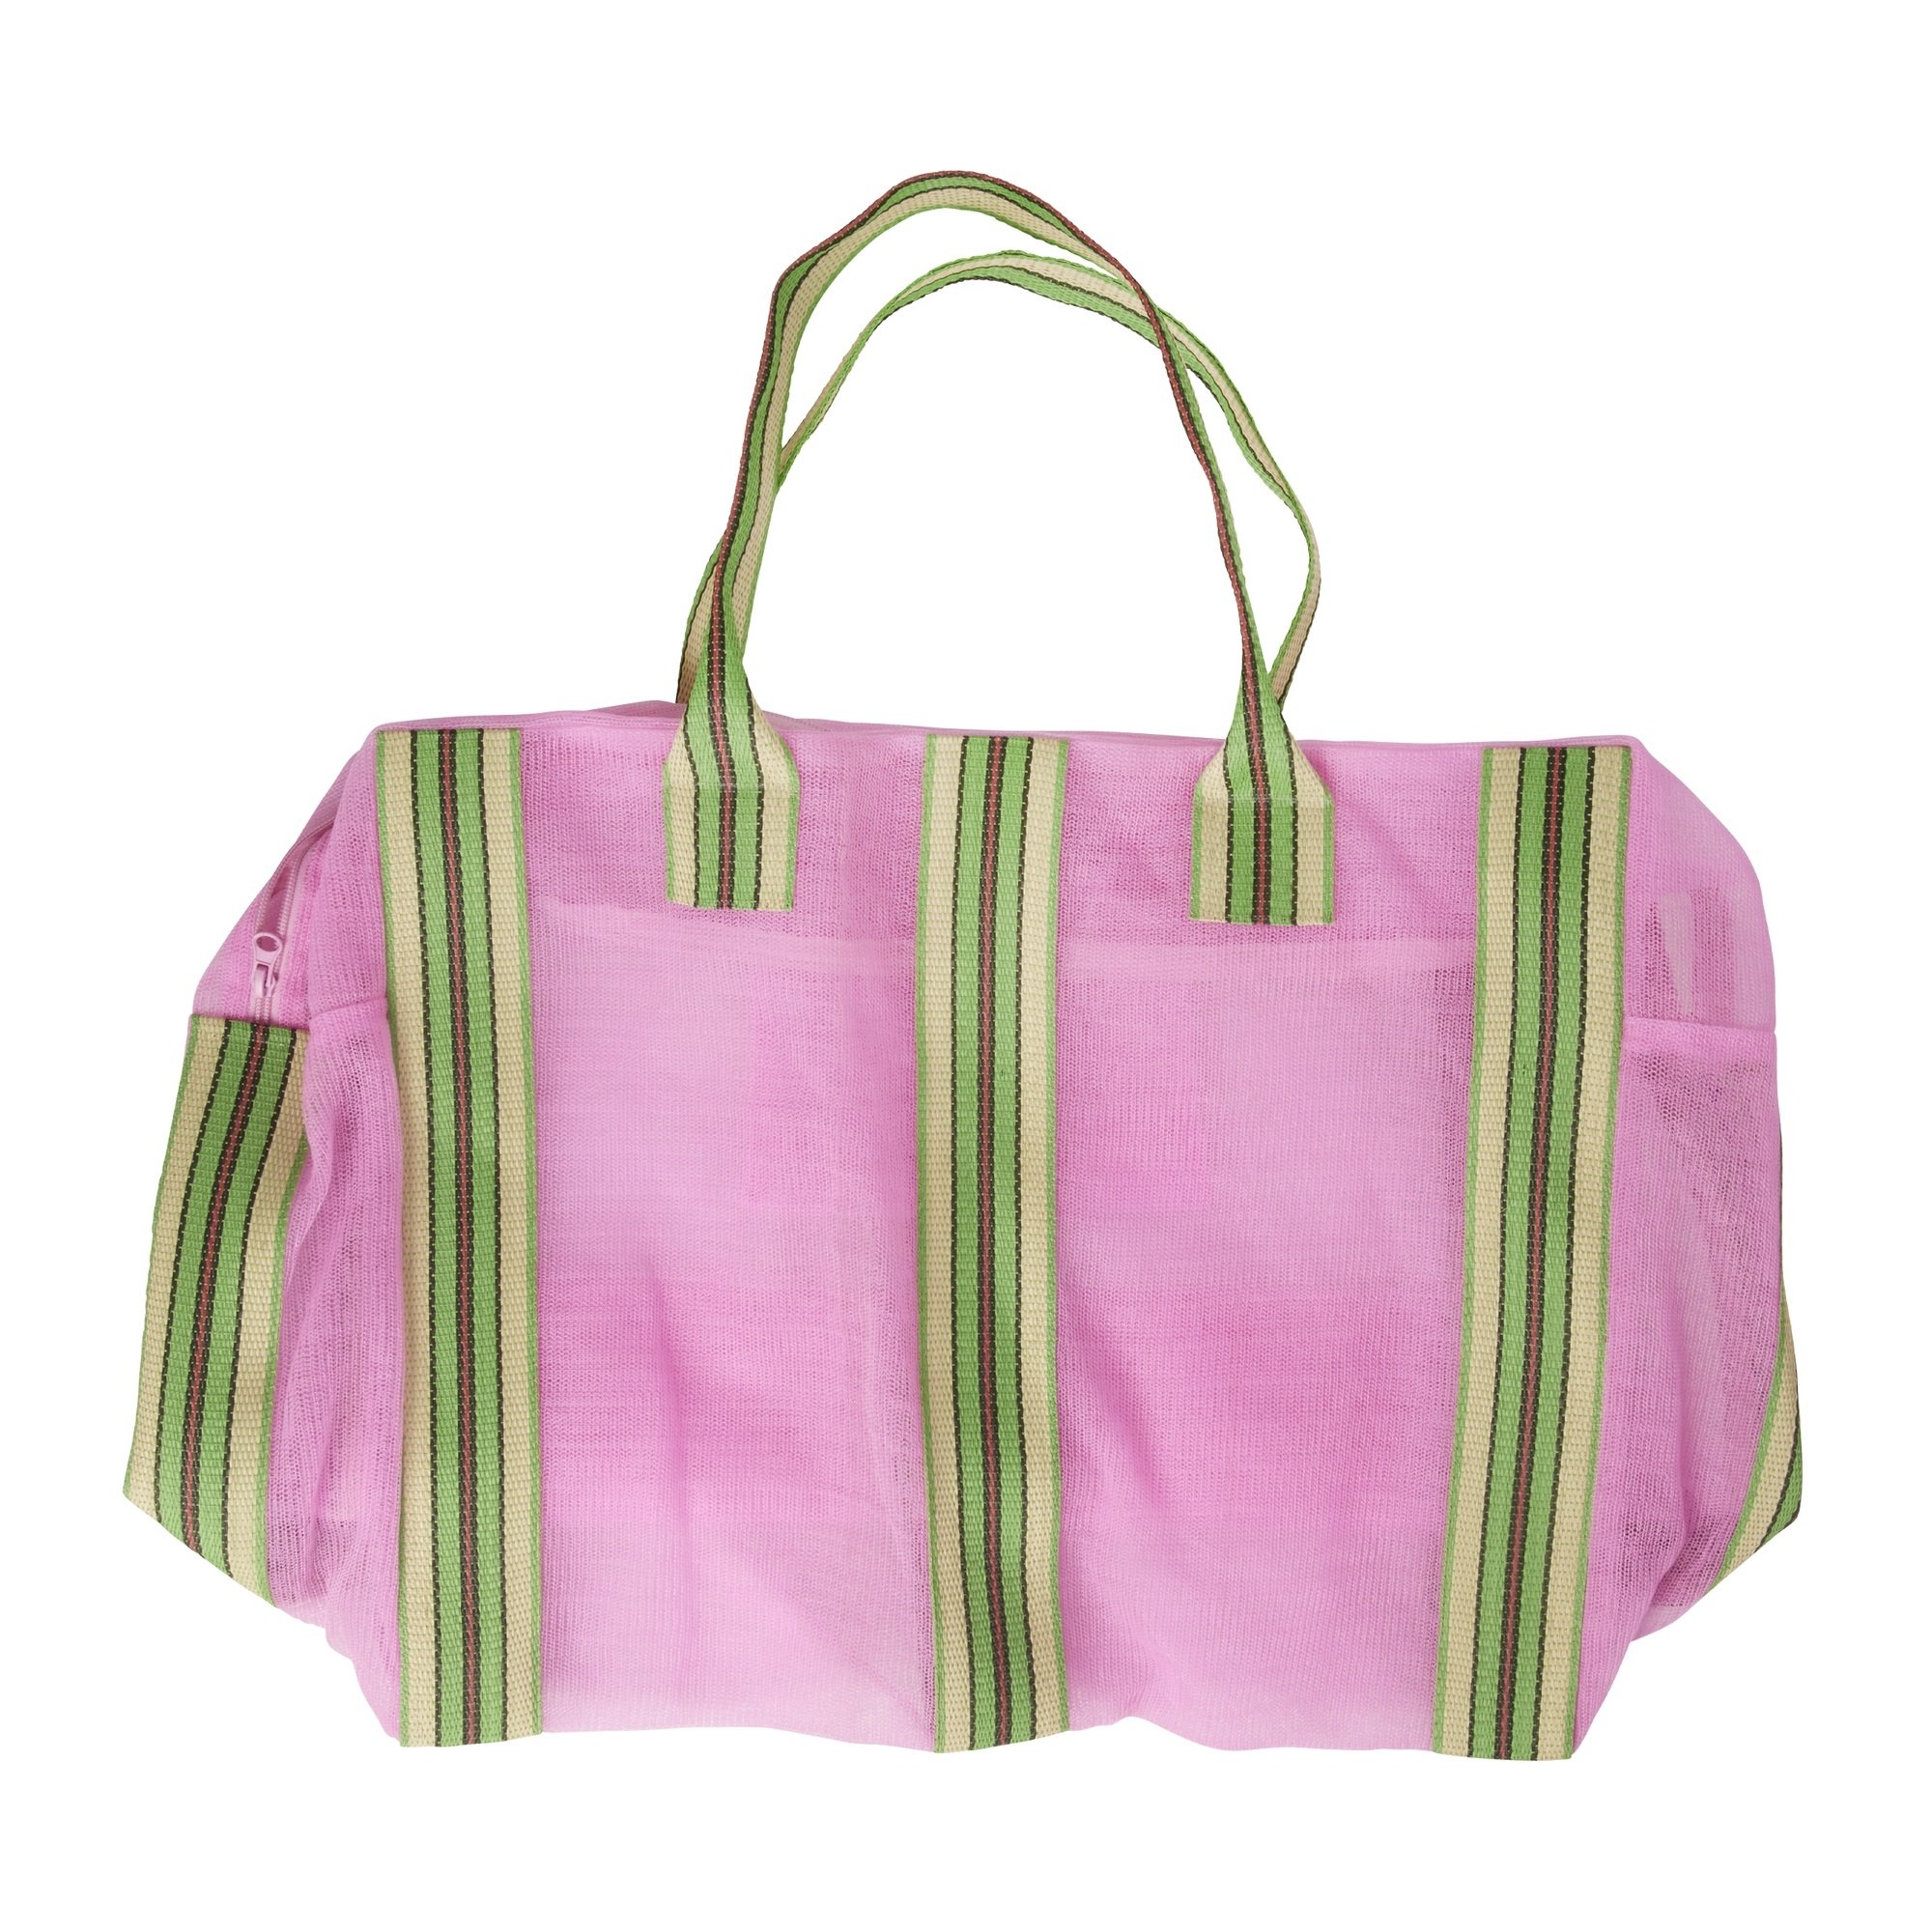 5: Rice - Genbrugs Weekendtaske Pink med Stribede Kanter